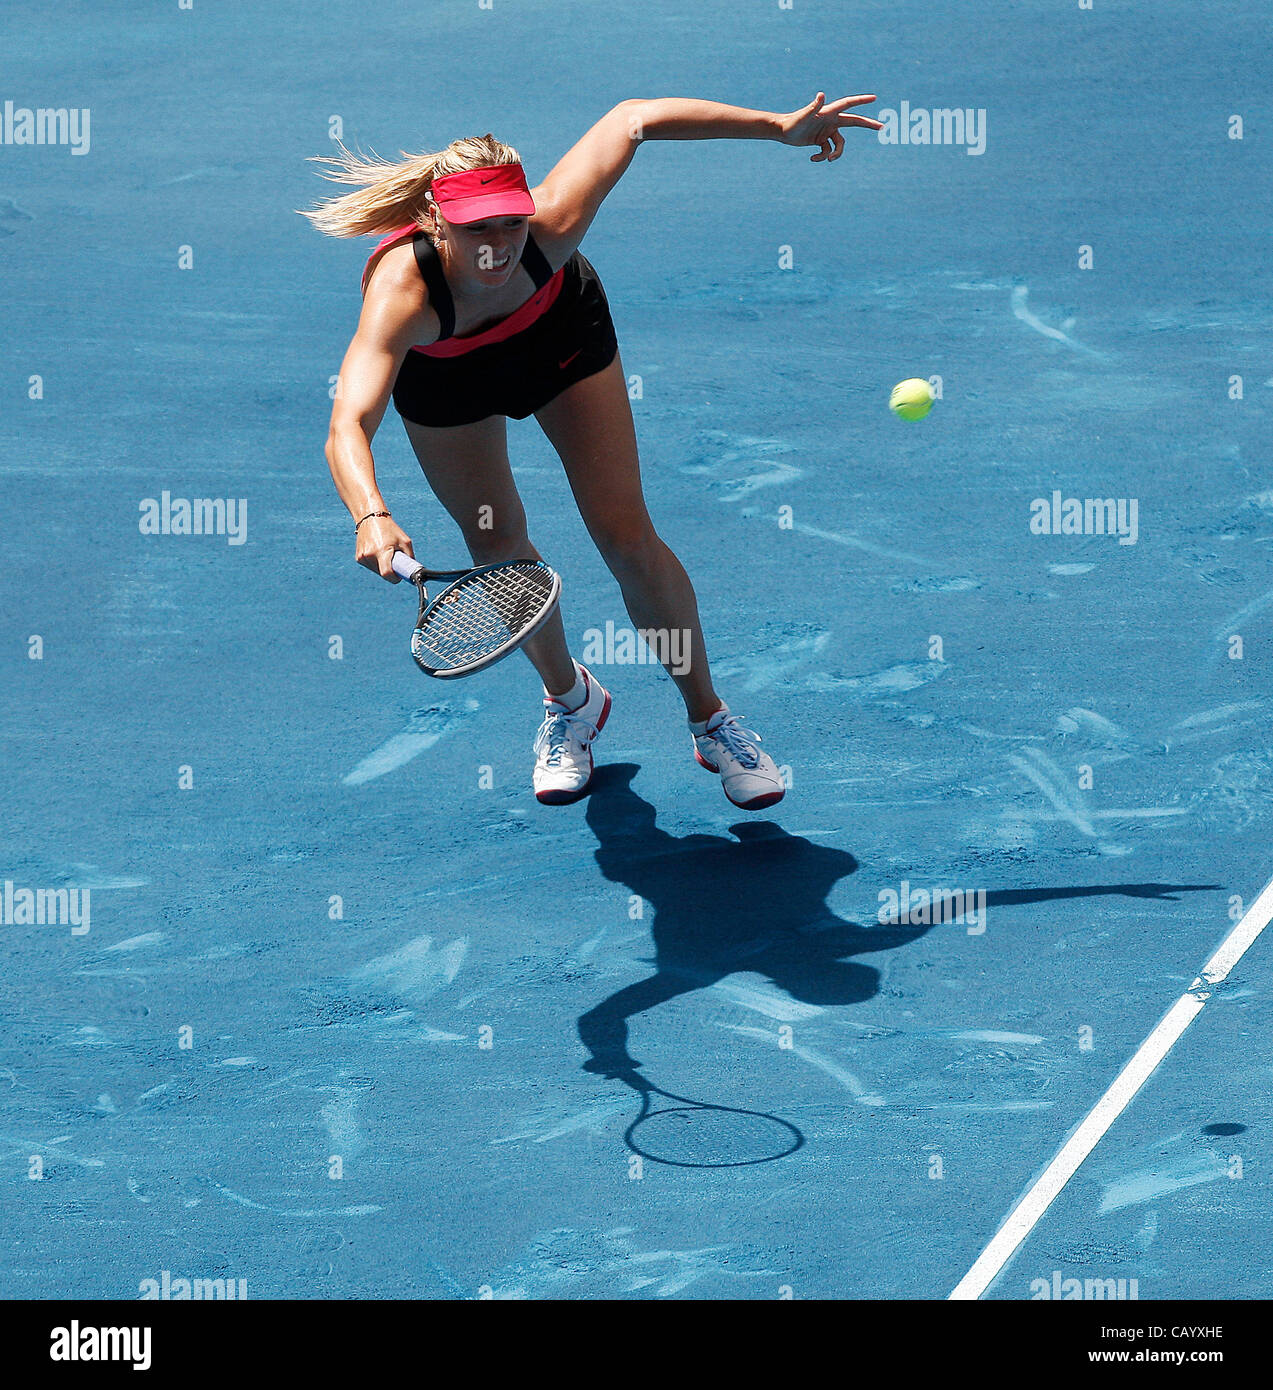 11.05.2012 Madrid, Spanien. Maria Sharapova in Aktion gegen Serena Williams im 1/4 Finale Einzel WTA Madrid Masters Tennisturnier. Stockfoto